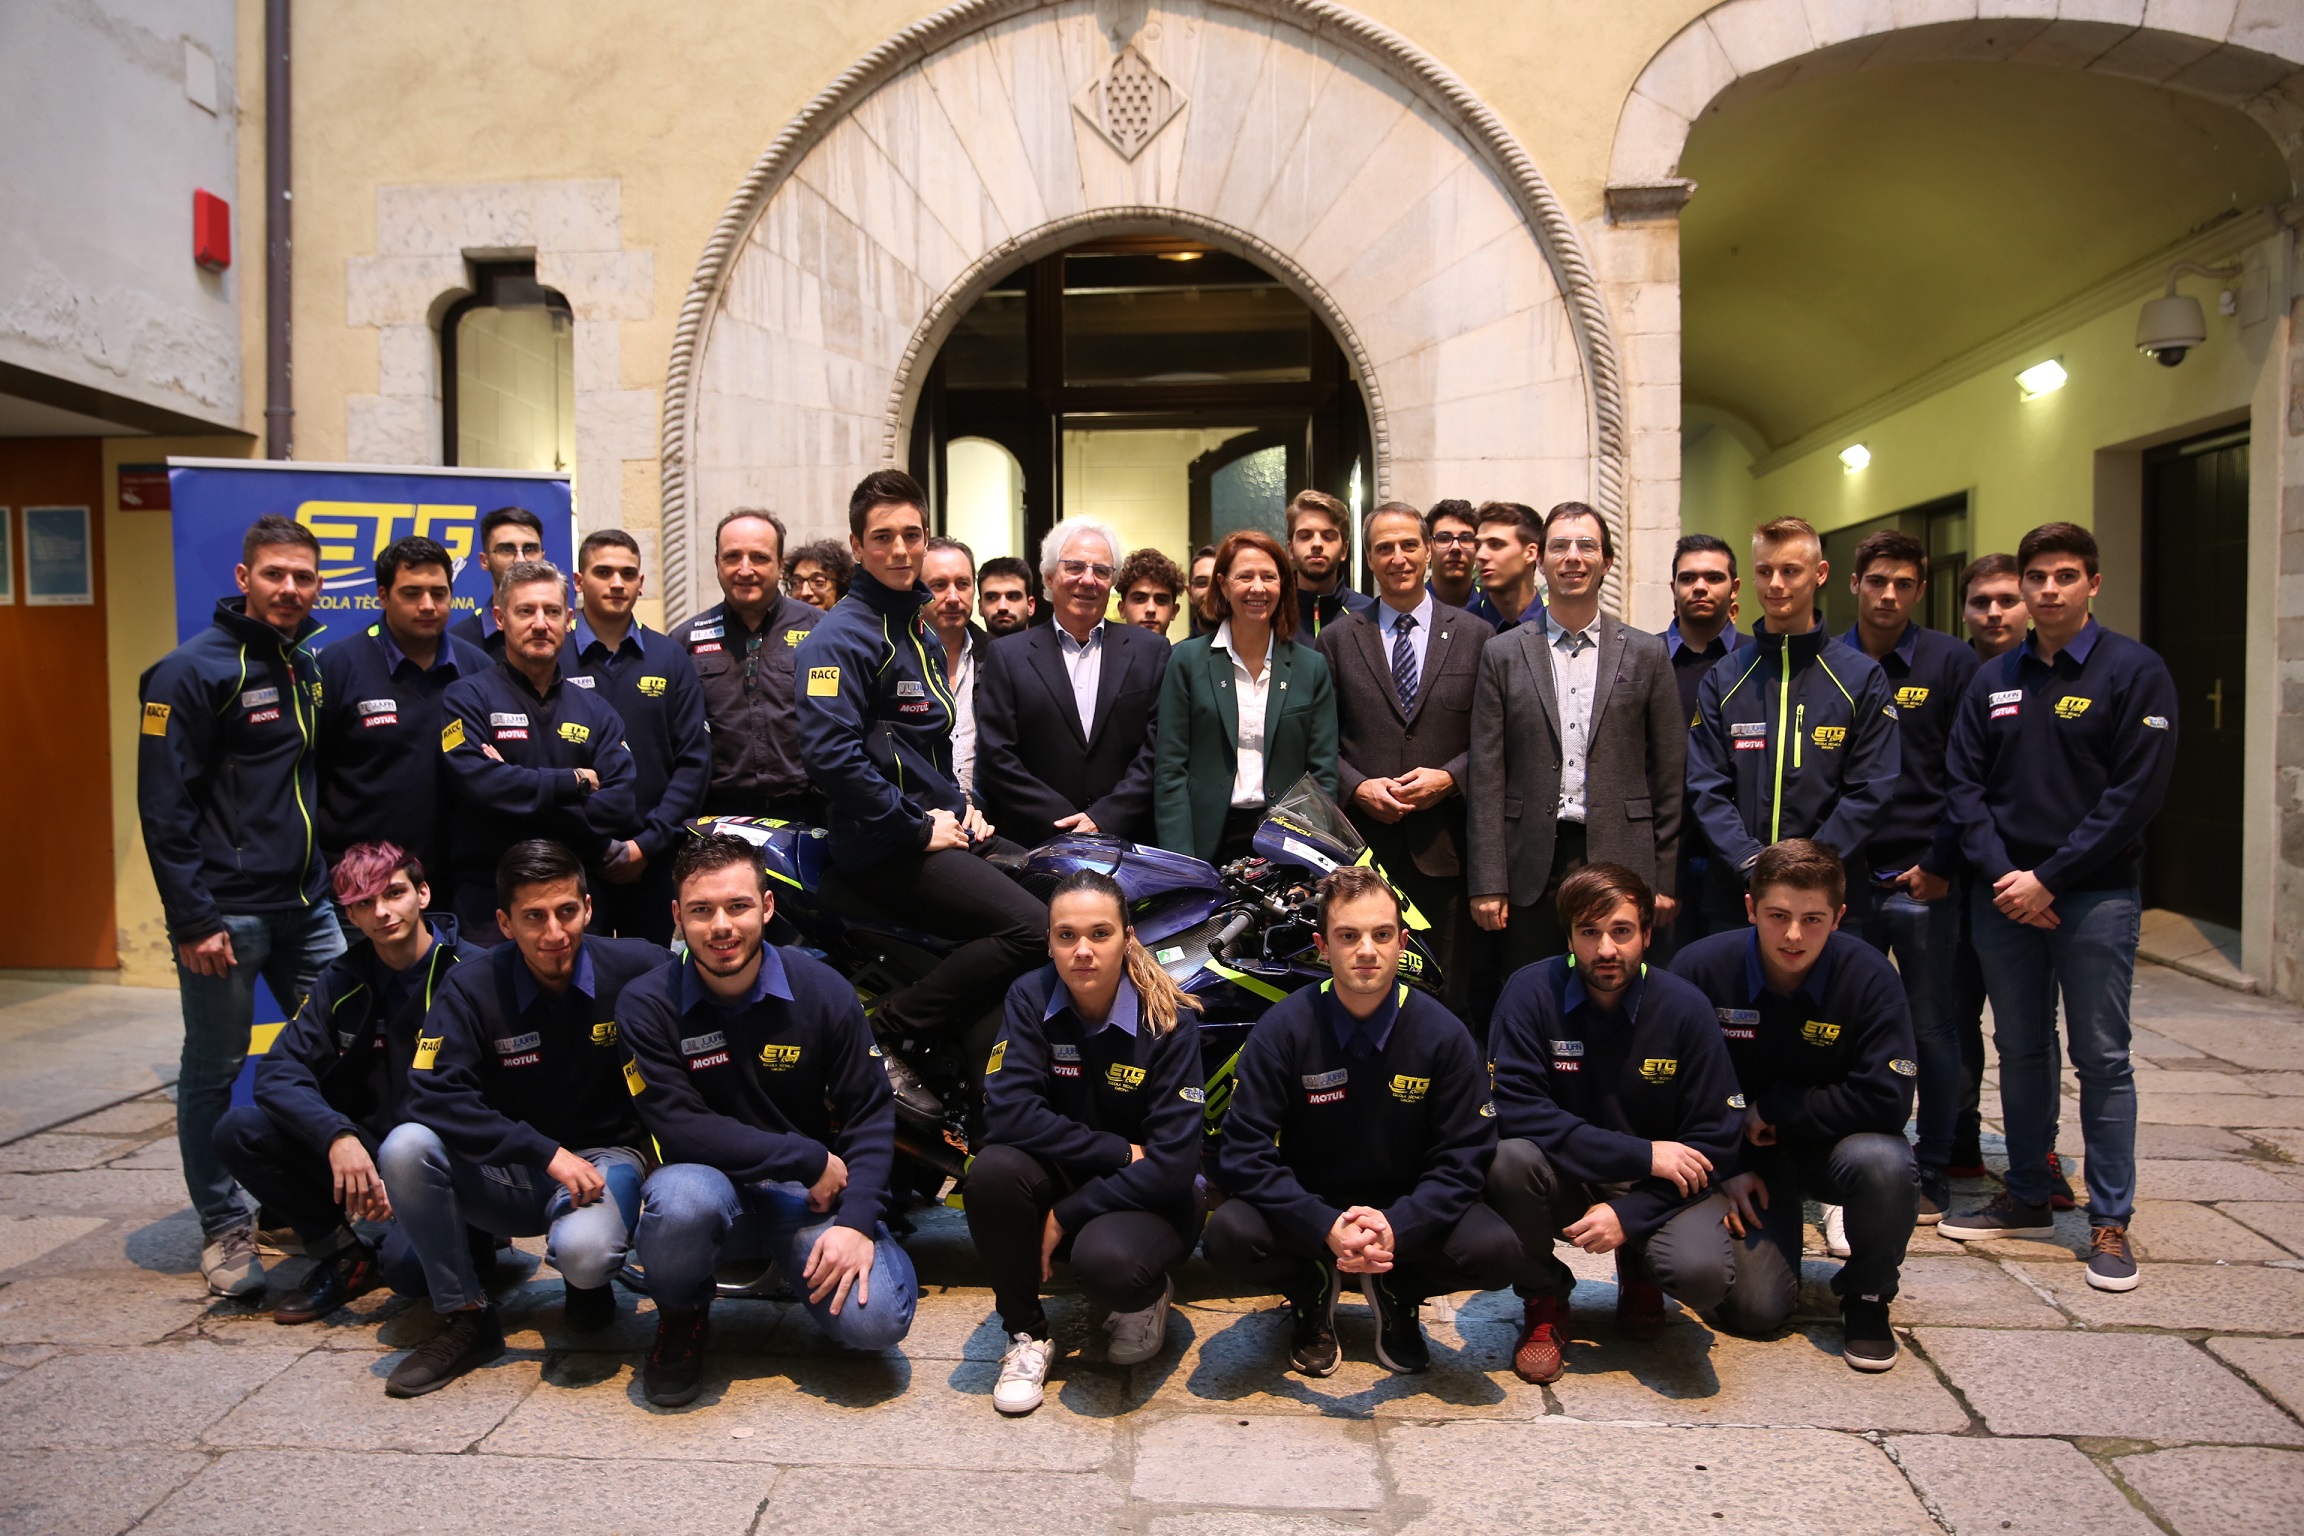 L’Ajuntament de Girona reconoce el mérito deportivo del piloto Xavi Pinsach y del equipo ETG Racing